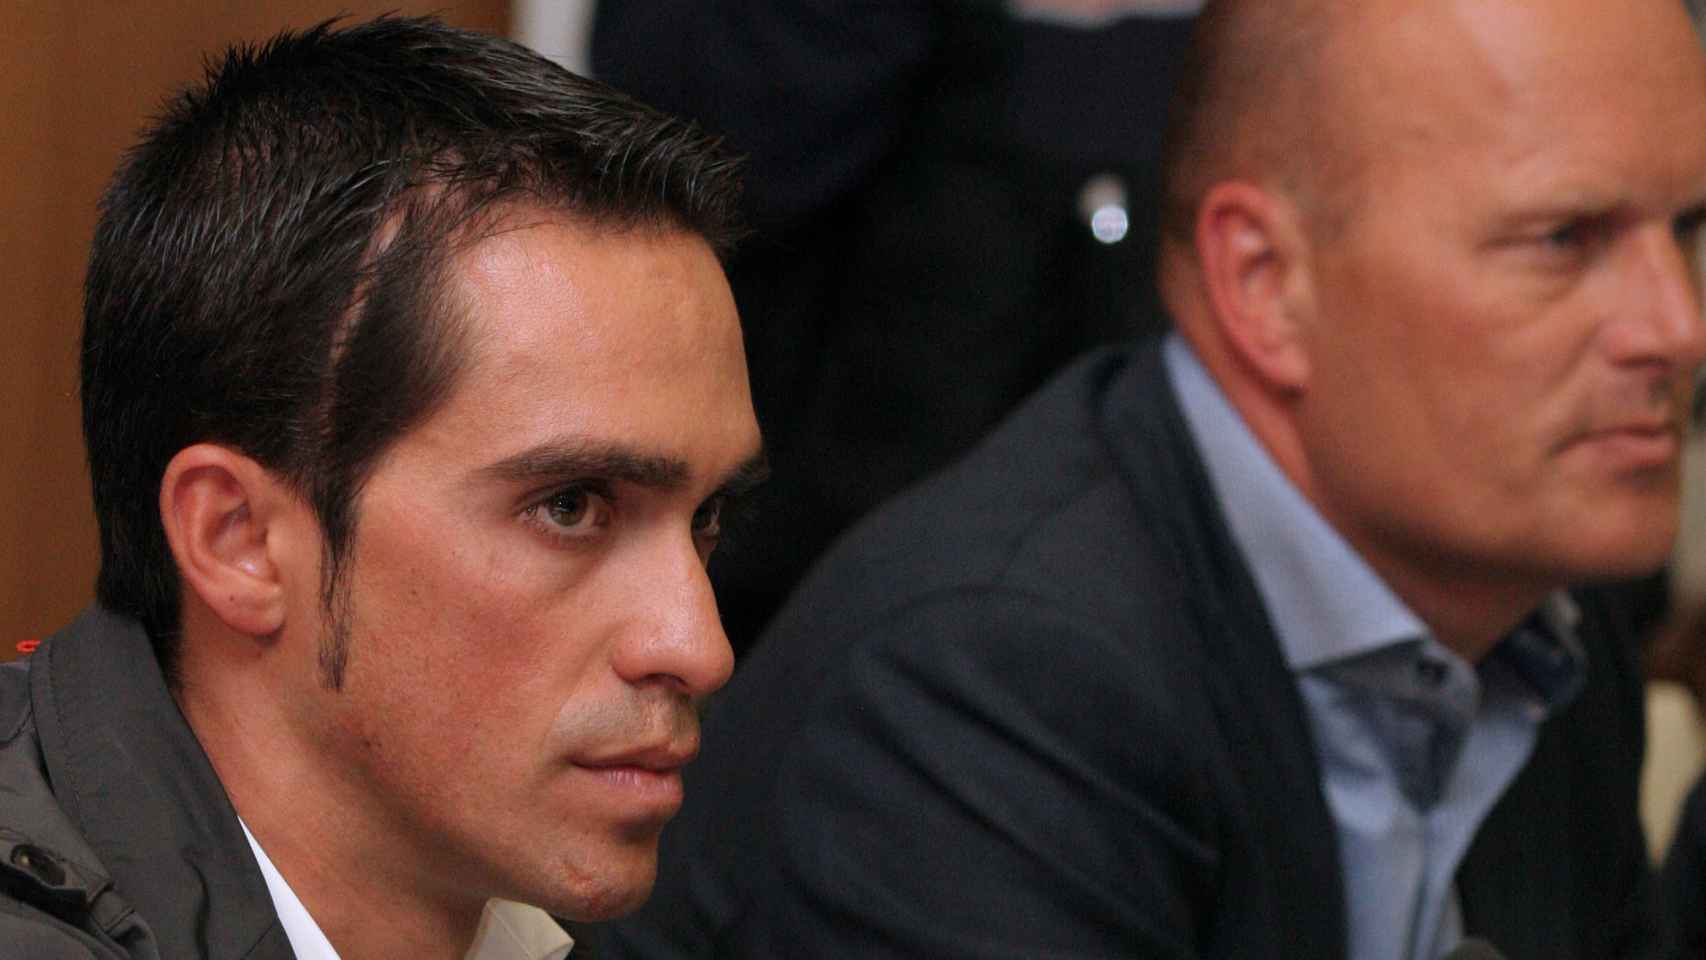 El ciclista Alberto Contador durante una rueda de prensa tras su sanción por dopaje, en febrero de 2012